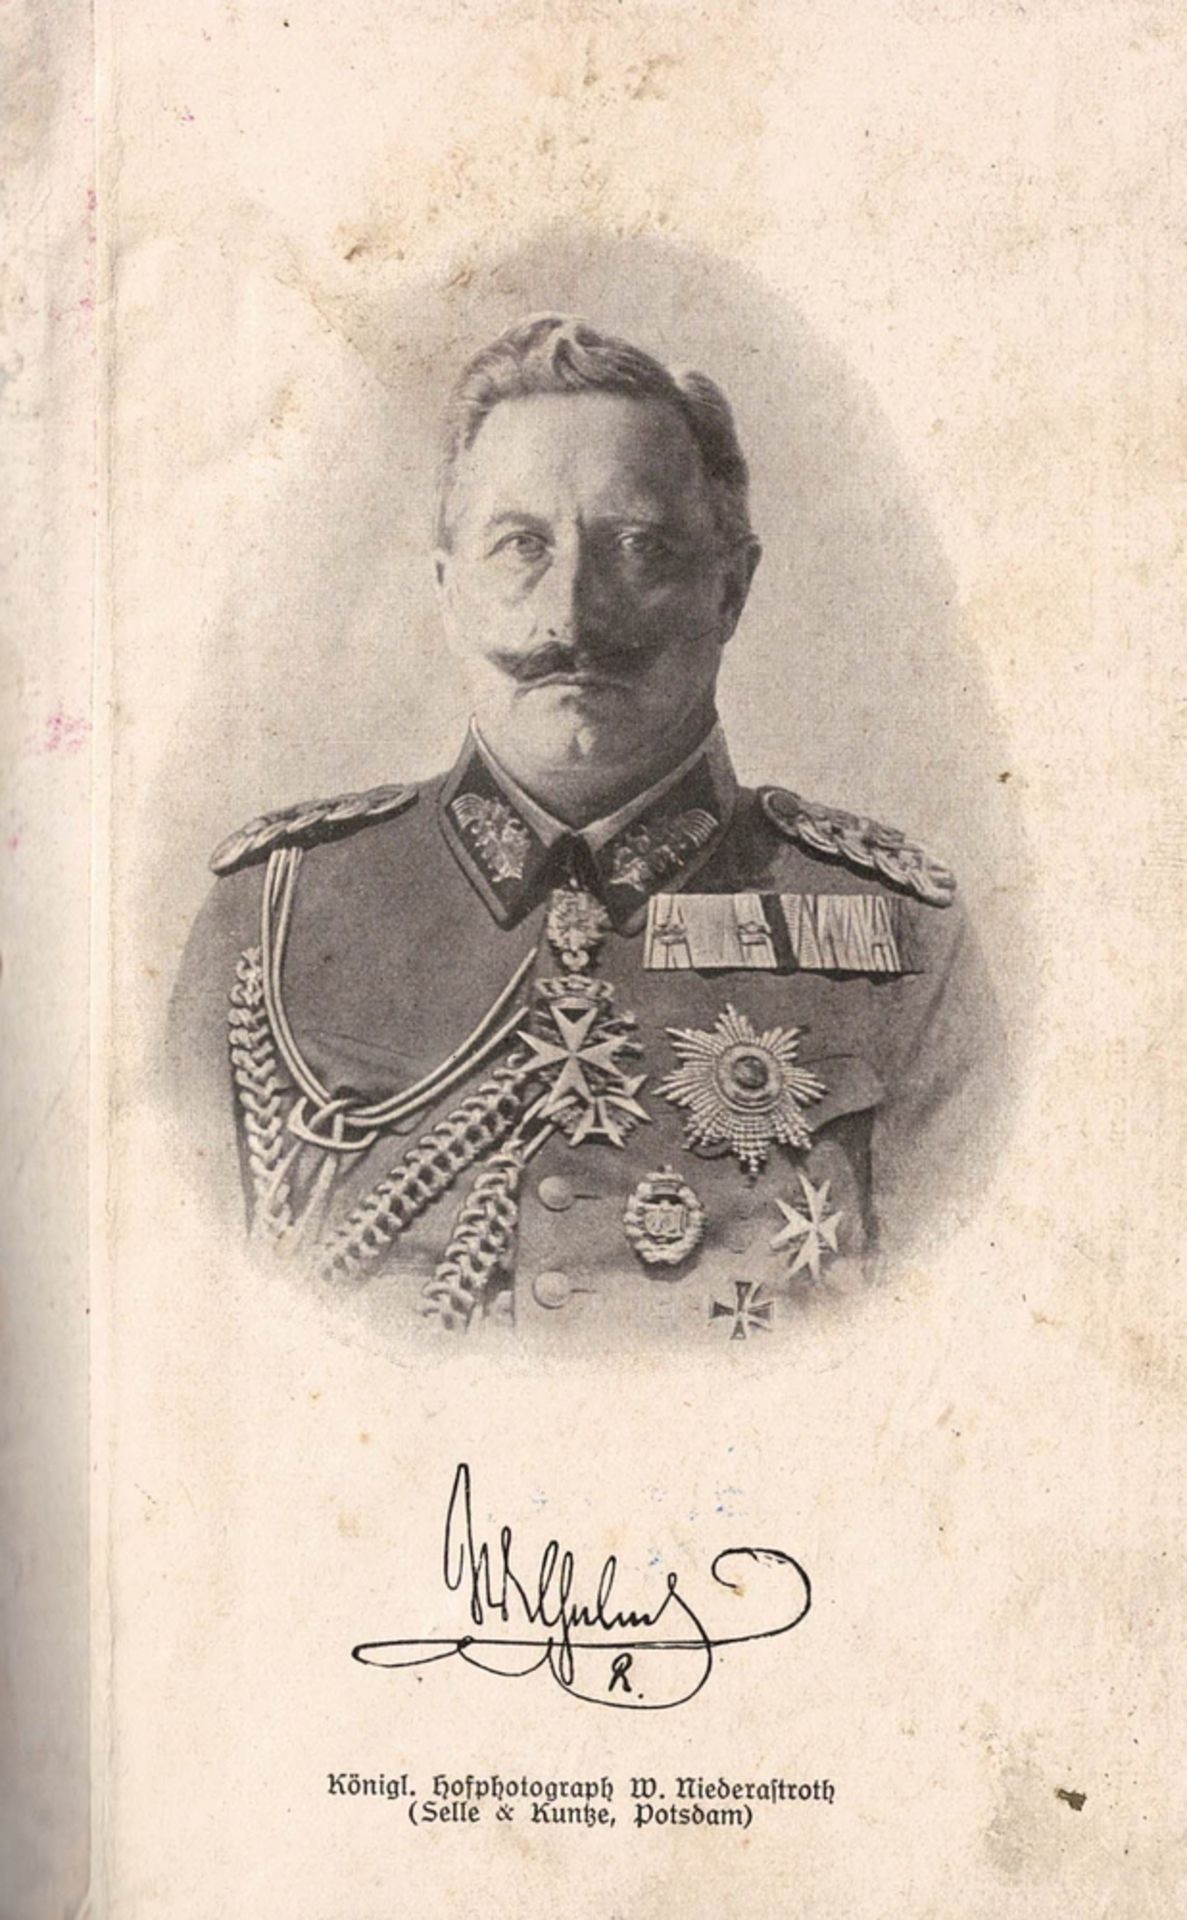 Buch "Der Dienstunterricht für den Kanonier und Fahrer der Feldartillerie." Kriegsausgabe 1916/1917. - Image 2 of 2